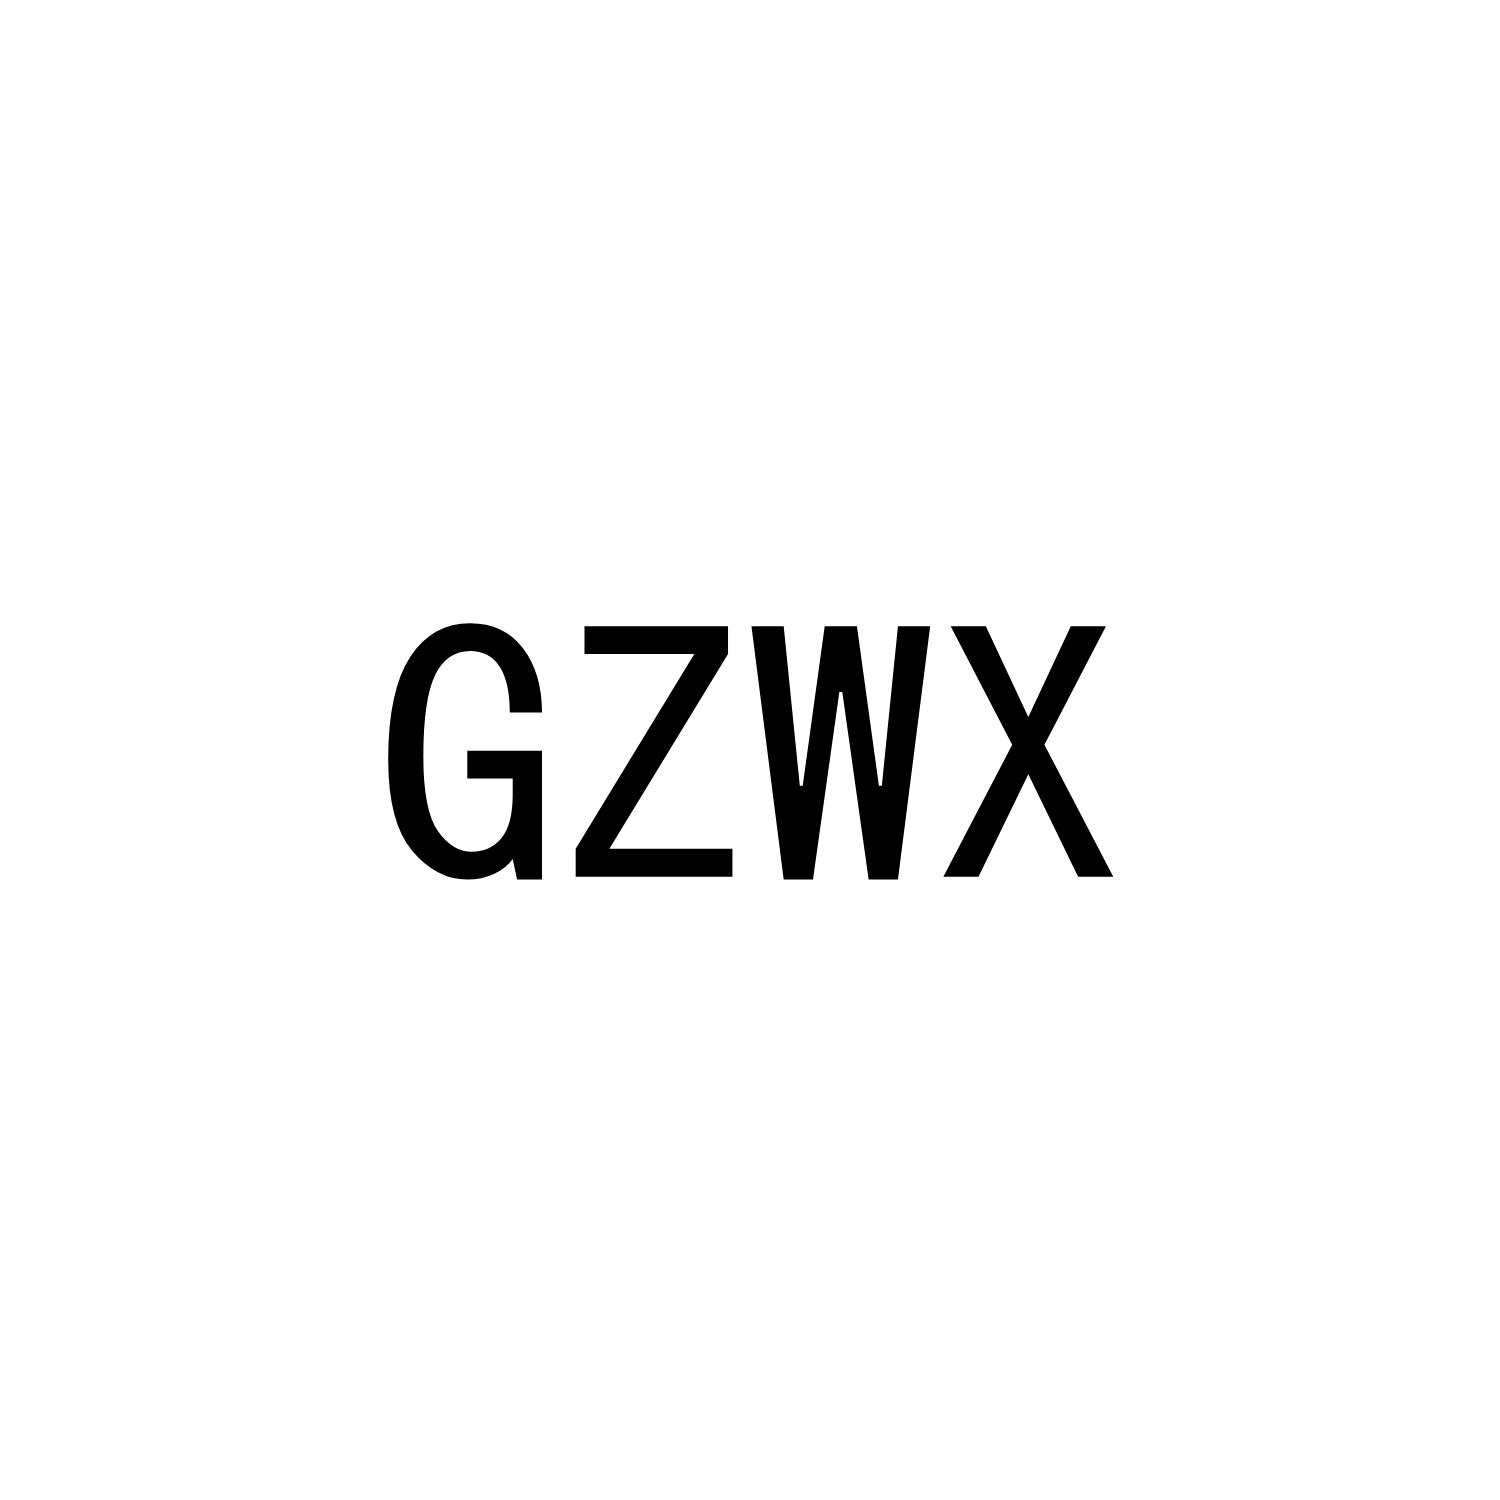 GZWX